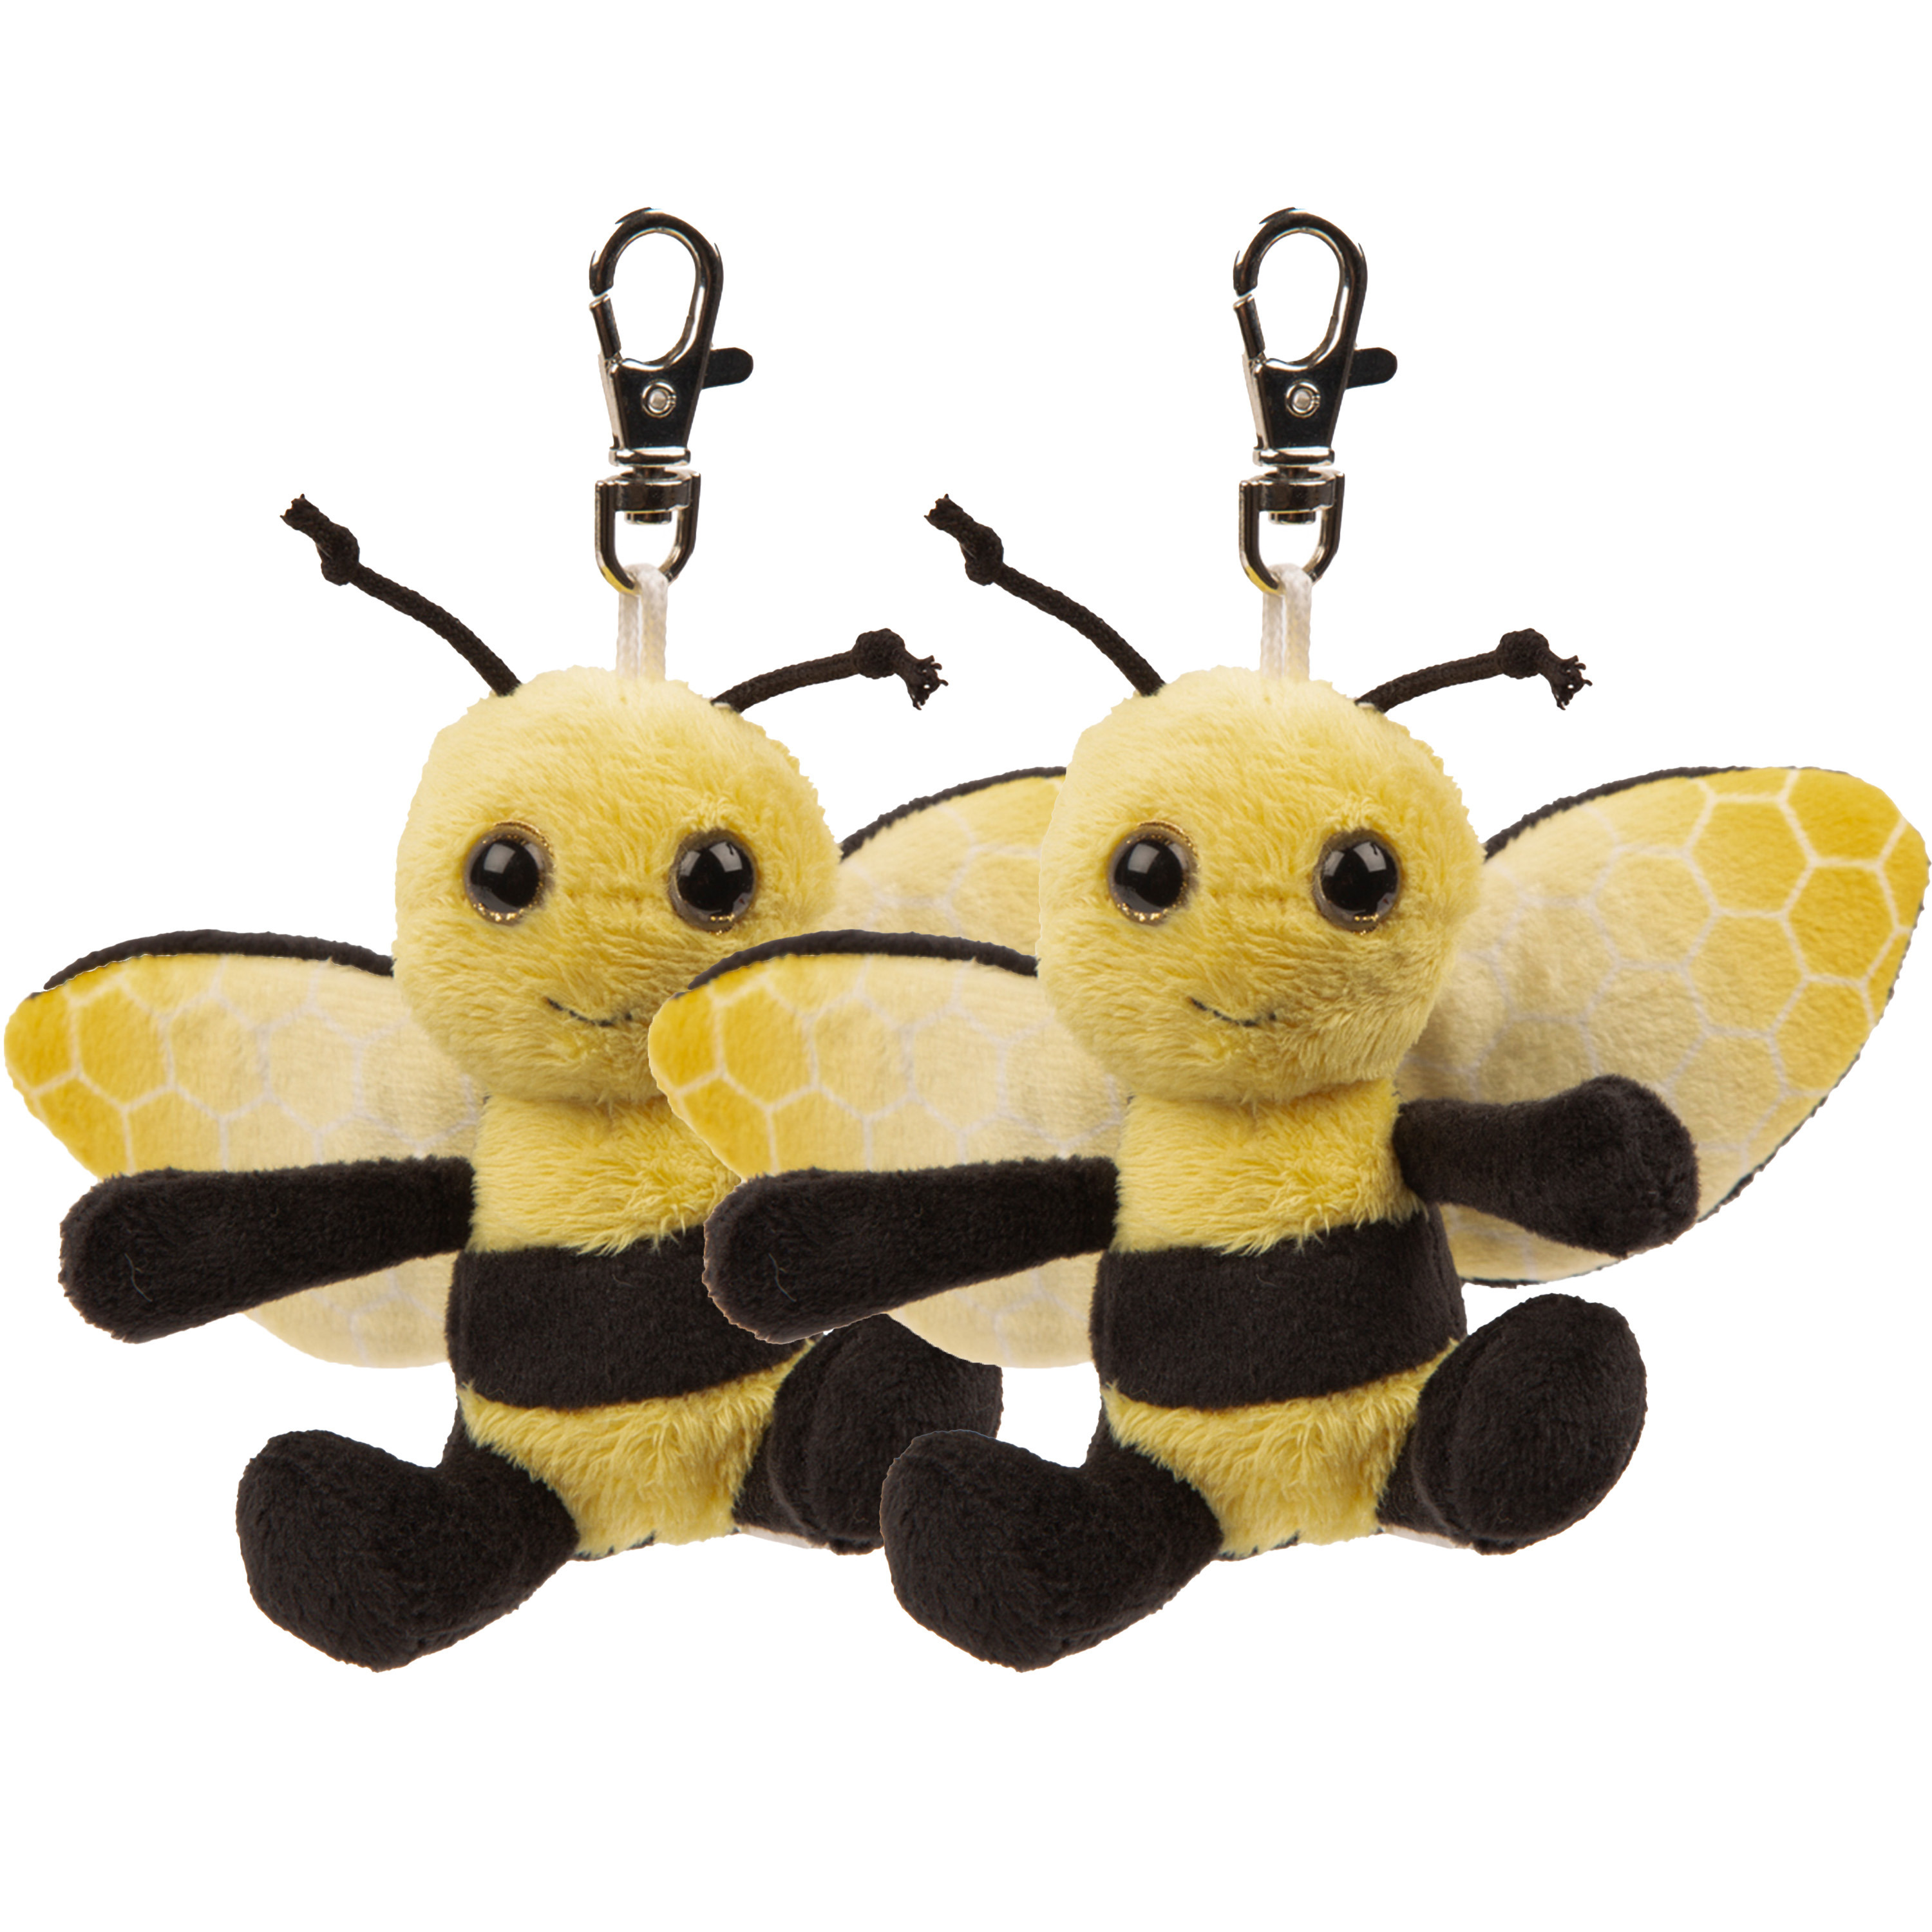 Suki Gifts Pluche knuffeldier Bijen sleutelhanger - 2x - geel/zwart - 9 cm - clip sluiting -